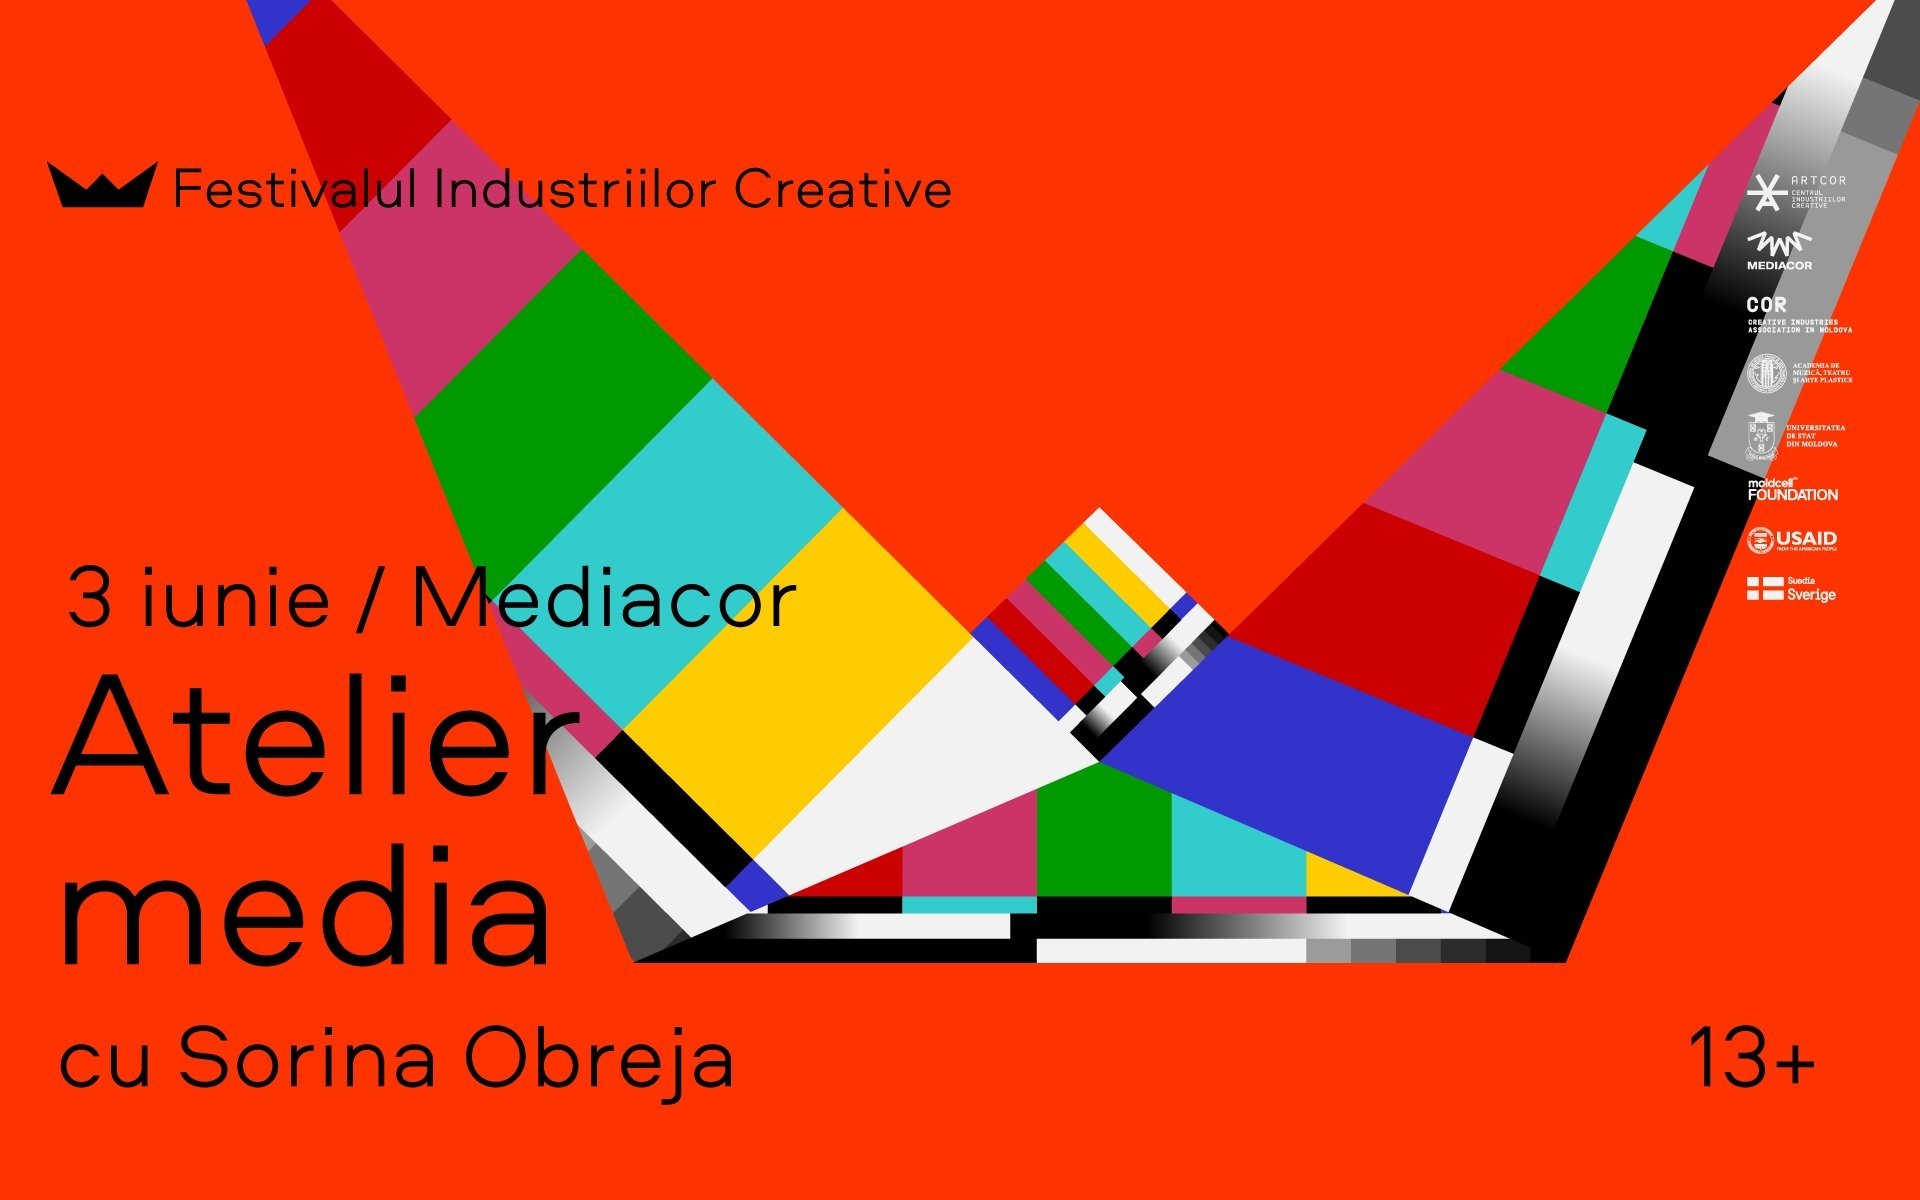 Atelier Media pentru tineri cu Sorina Obreja | Festivalul Industriilor Creative